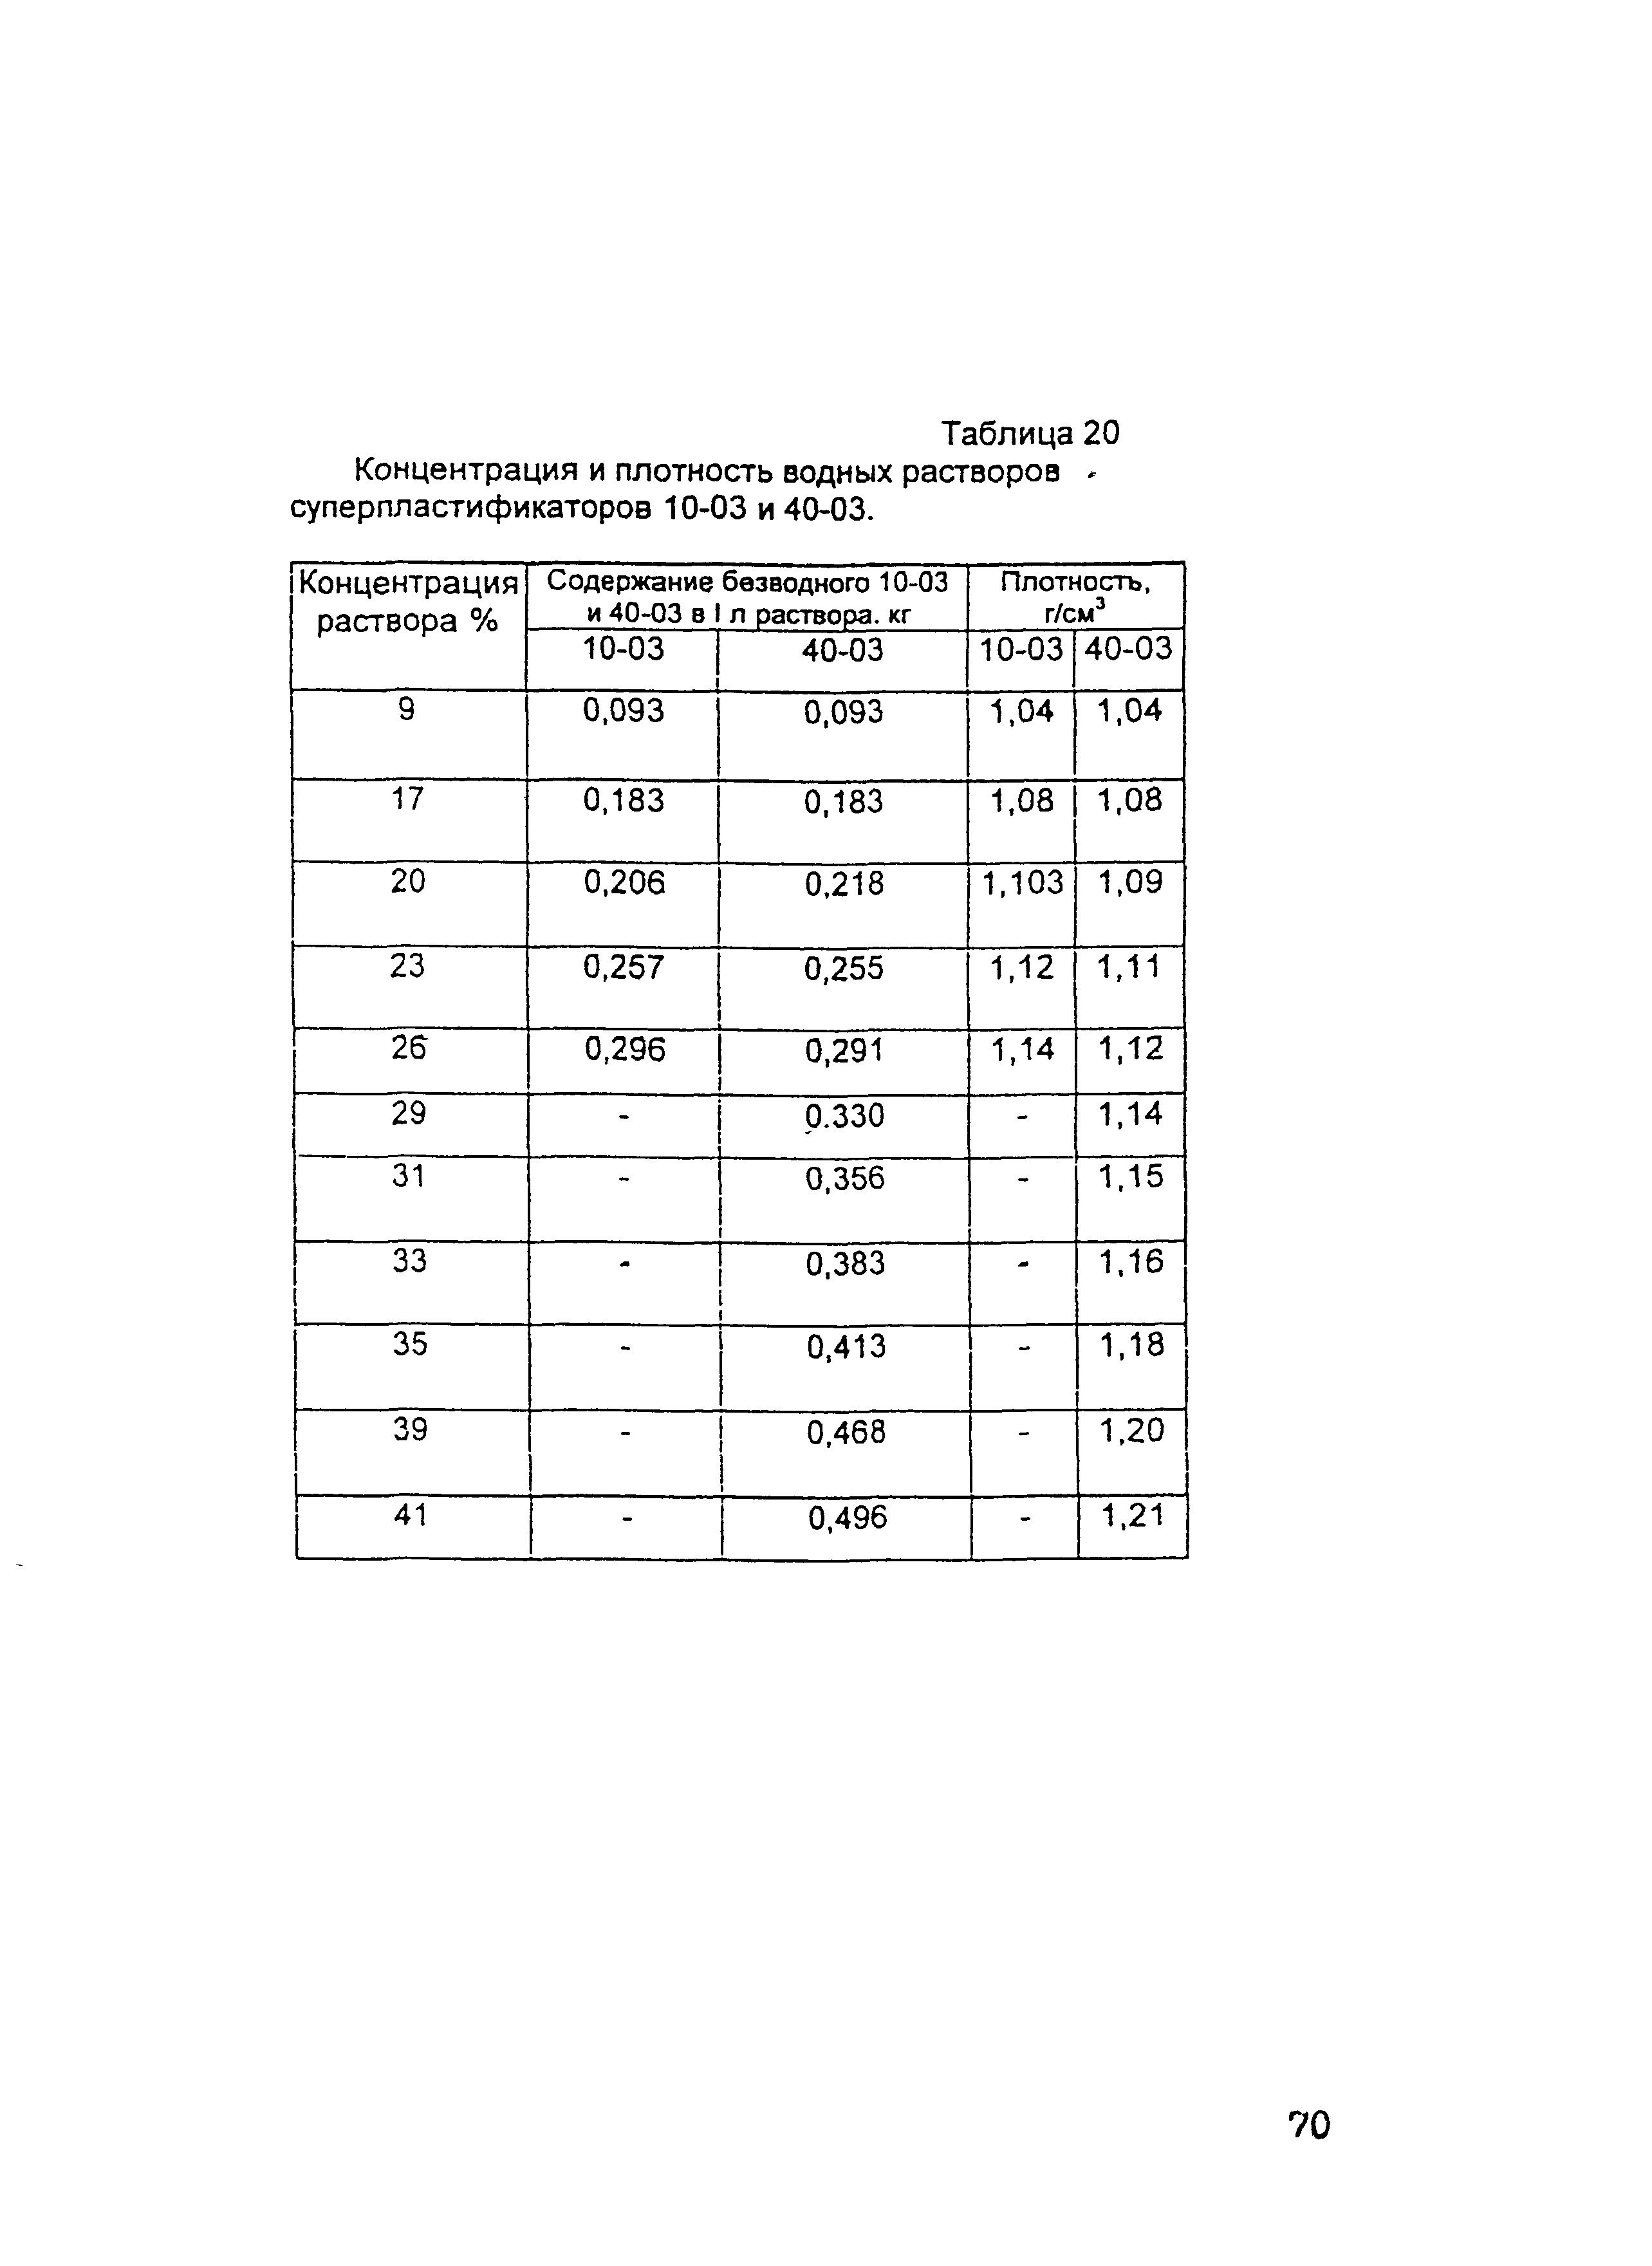 ОСН-АПК 2.10.32.001-04